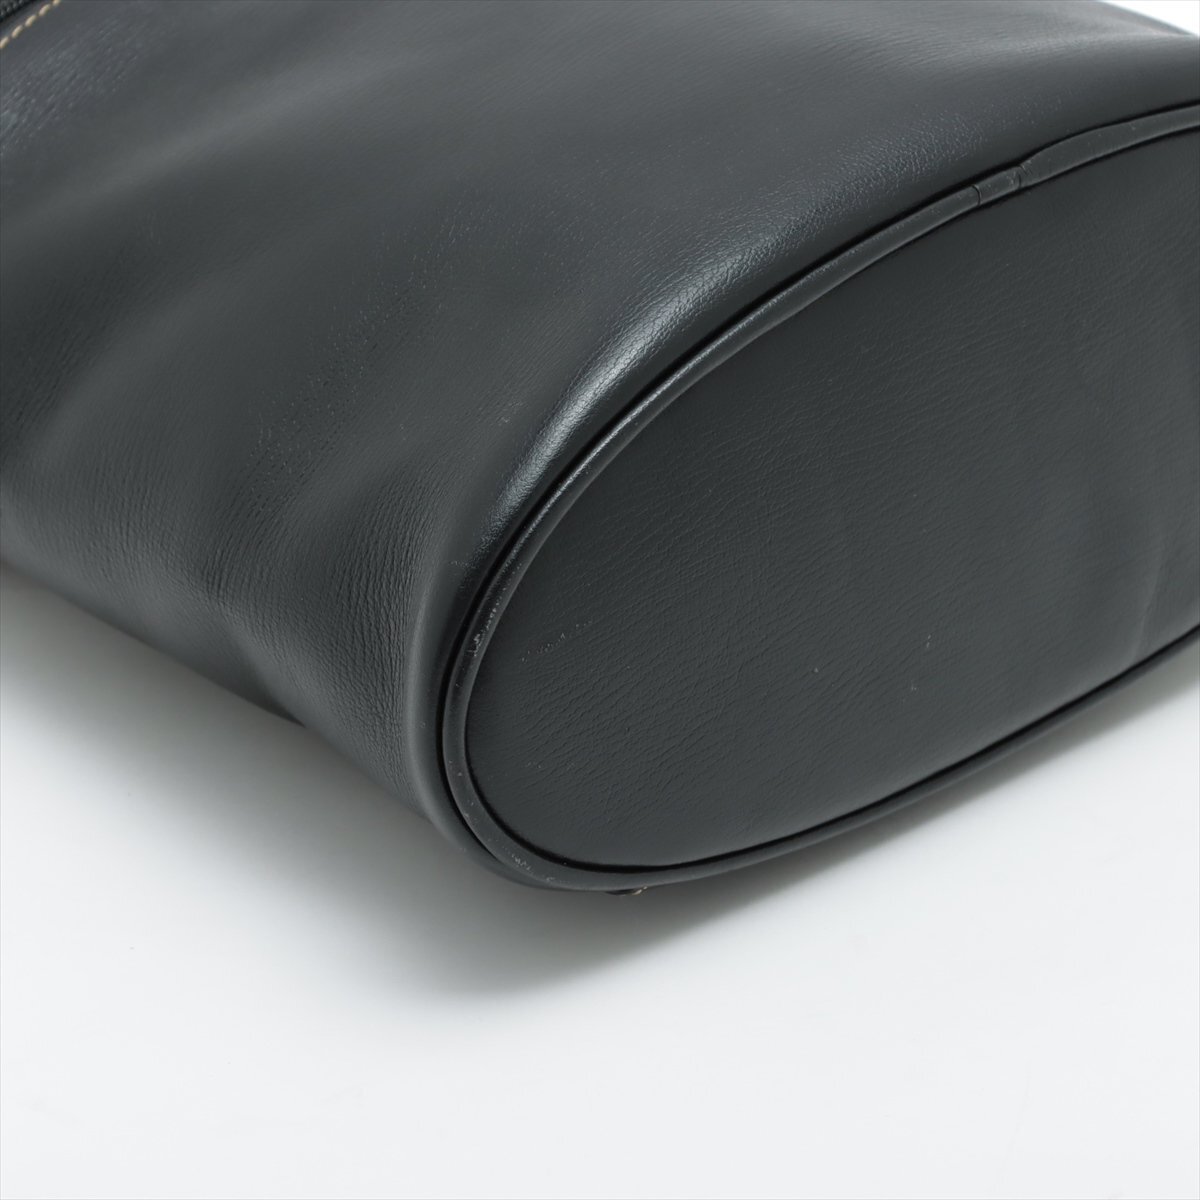 1 иен # прекрасный товар # Loewe #belaskes# кожа # ручная сумочка # большая сумка vanity популярный стандартный модный плечо женский ENT 1016-E82